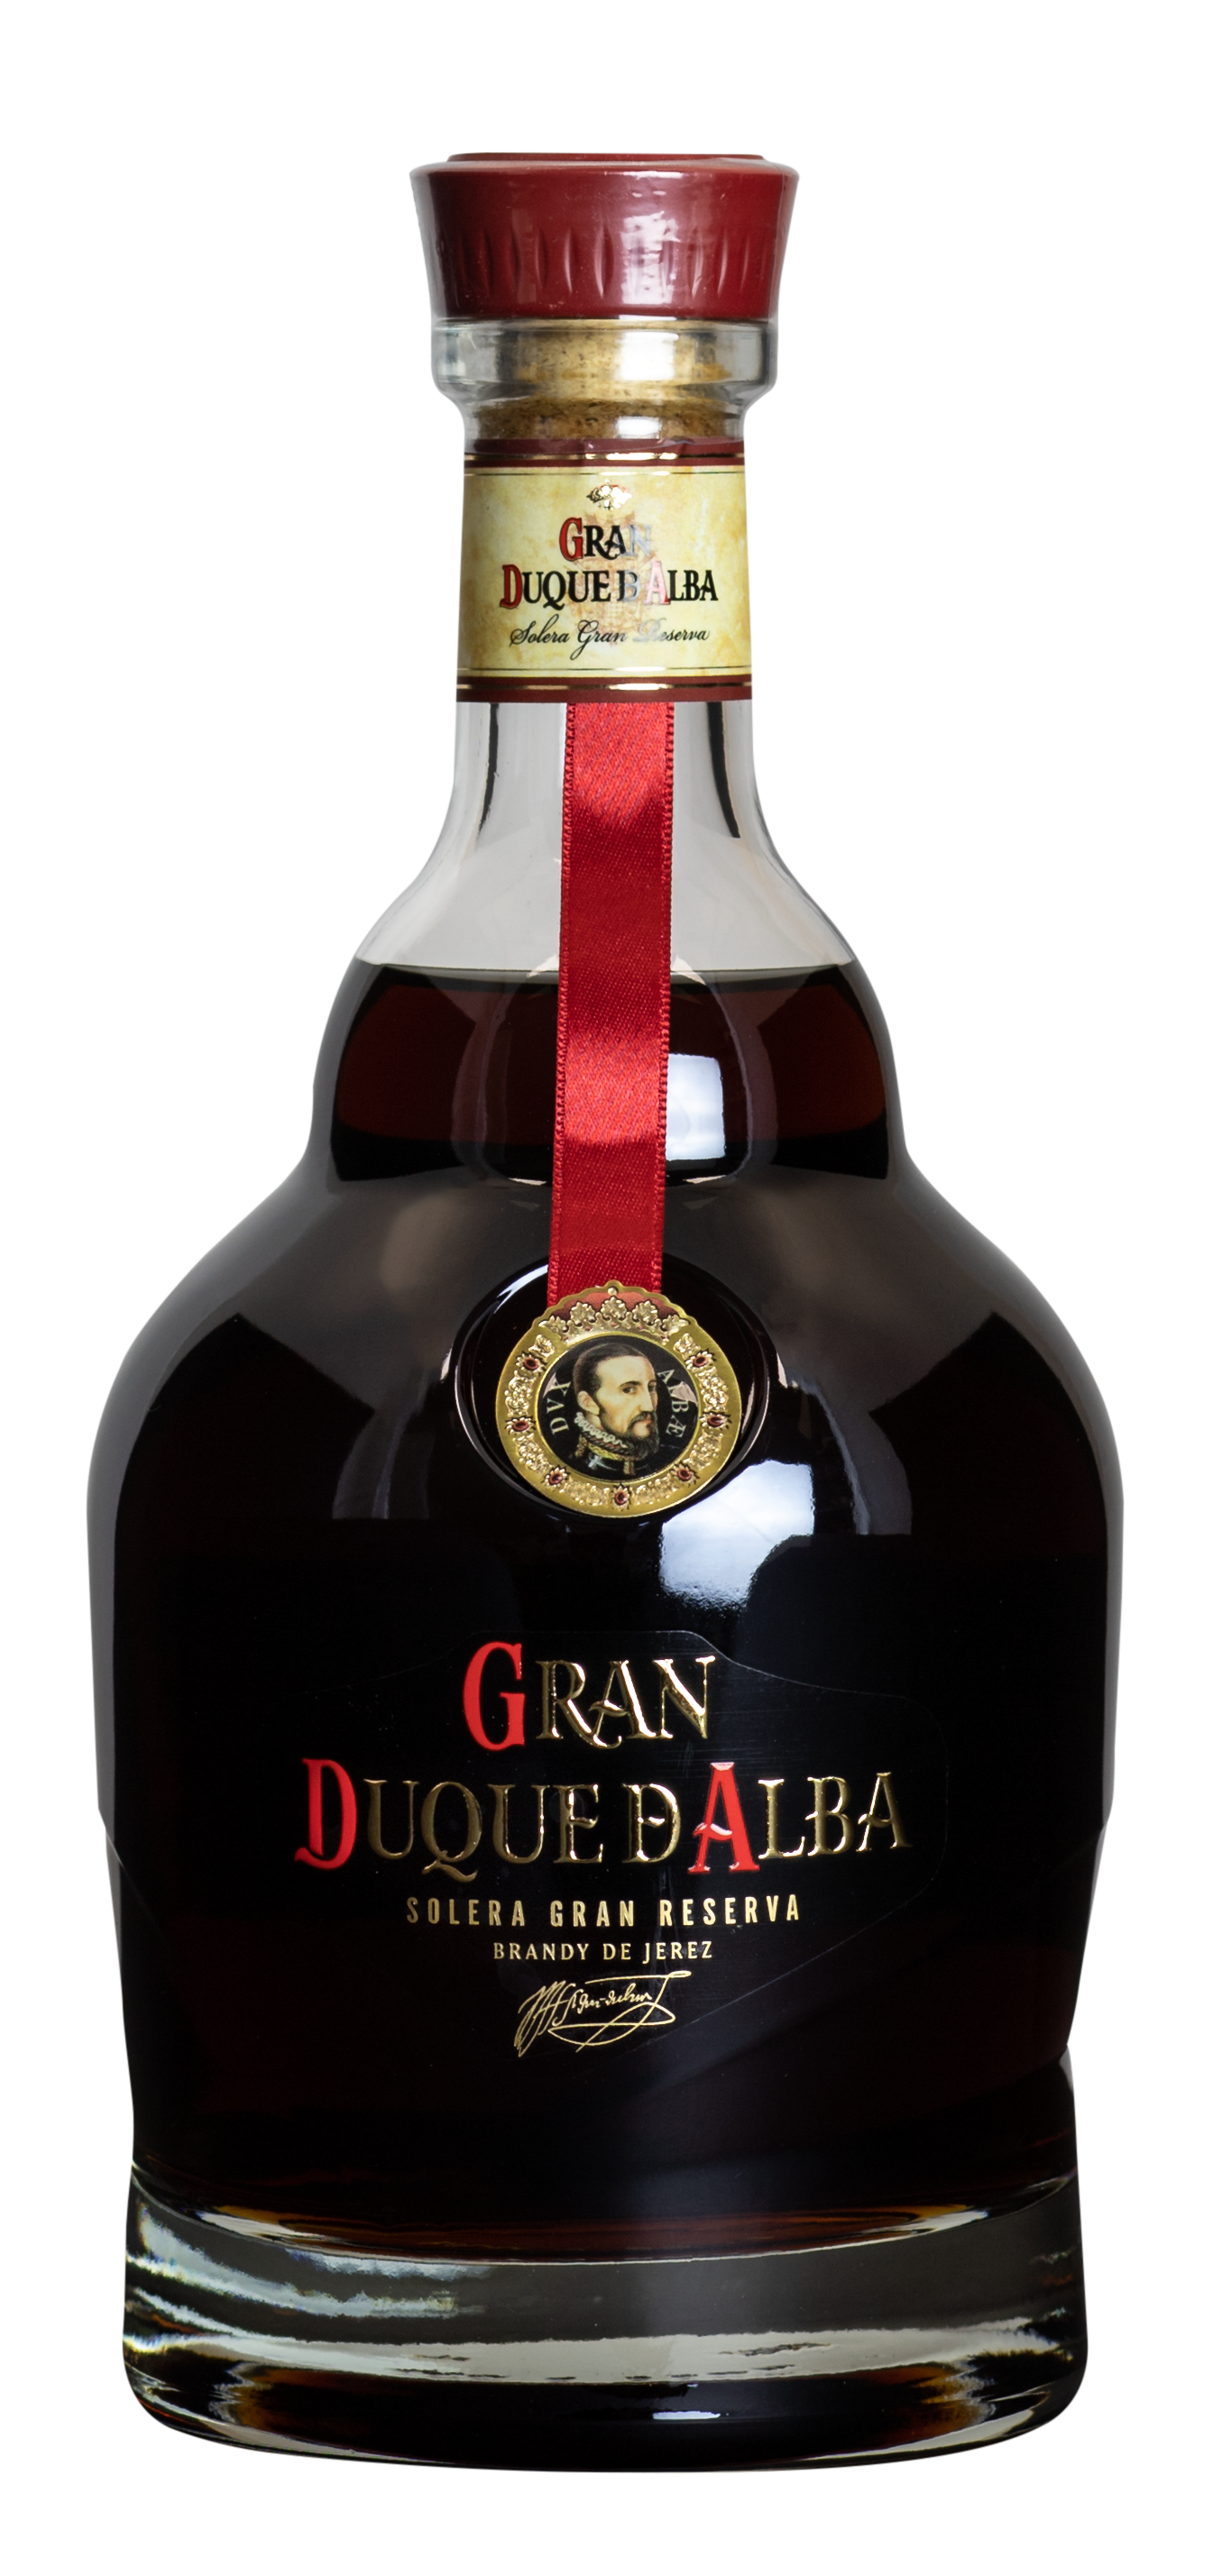 Gran Duque D Alba Gran Reserva Brandy 40% 0,7l